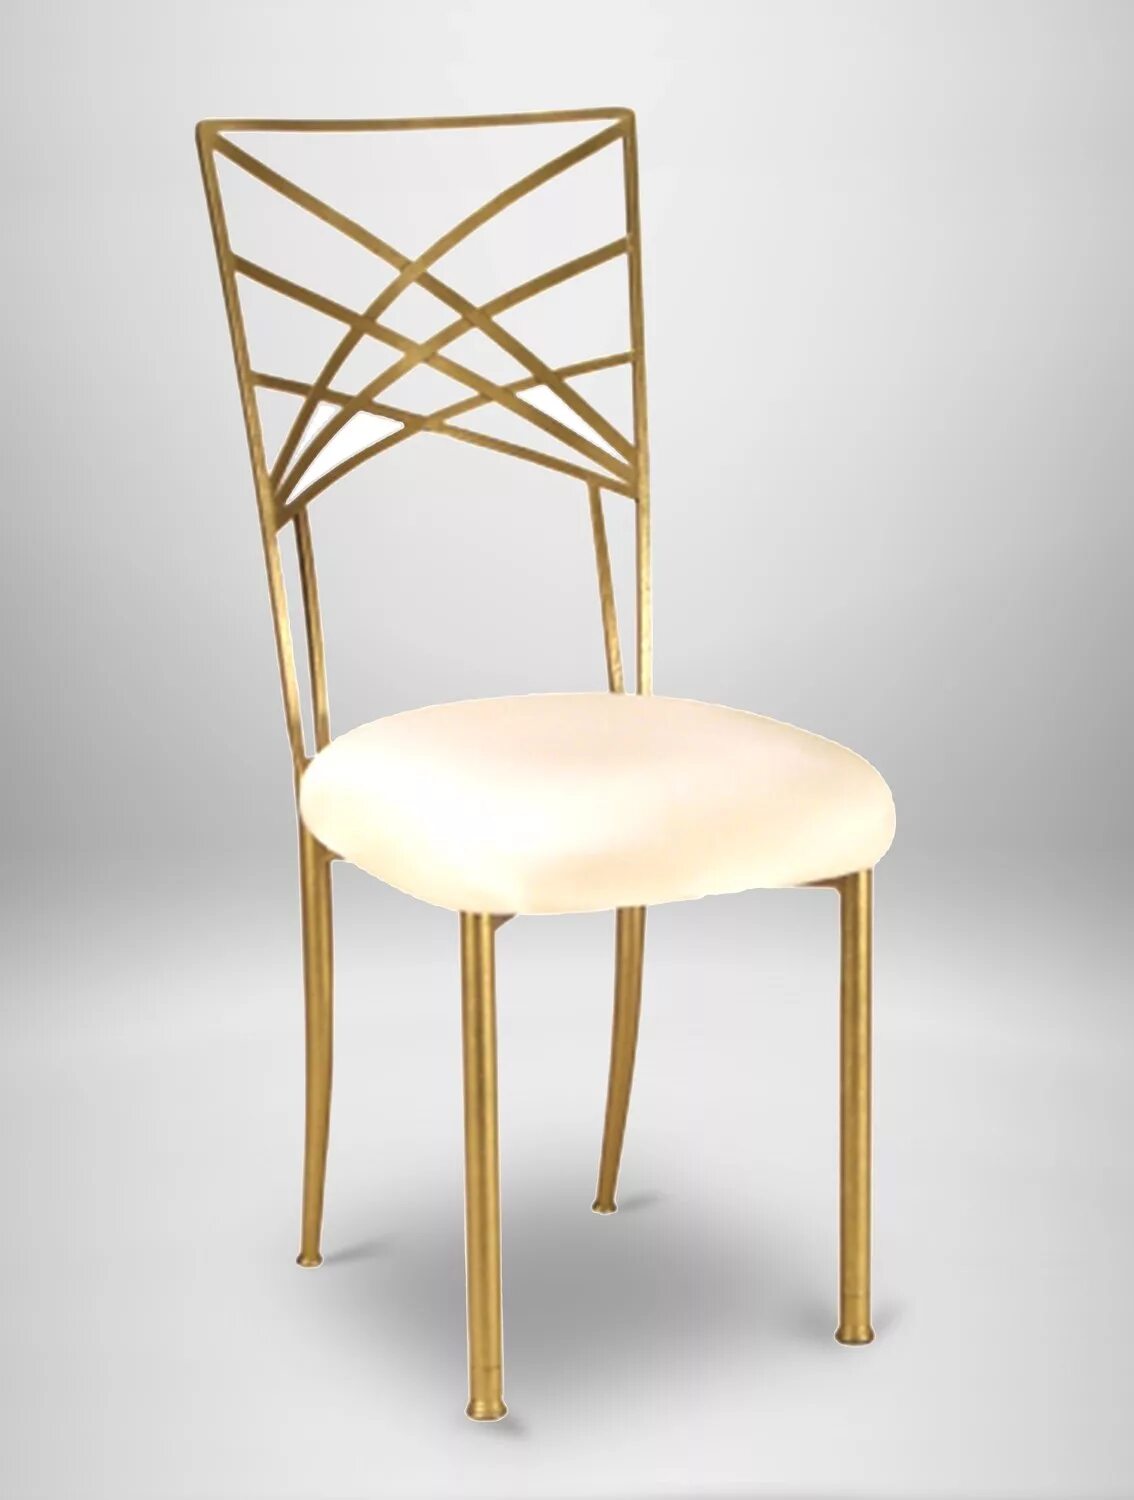 Стул Chameleon золотой. Alanso Velvet Side Chair in Gold. Стулья с золотыми ножками. Модель на стуле.